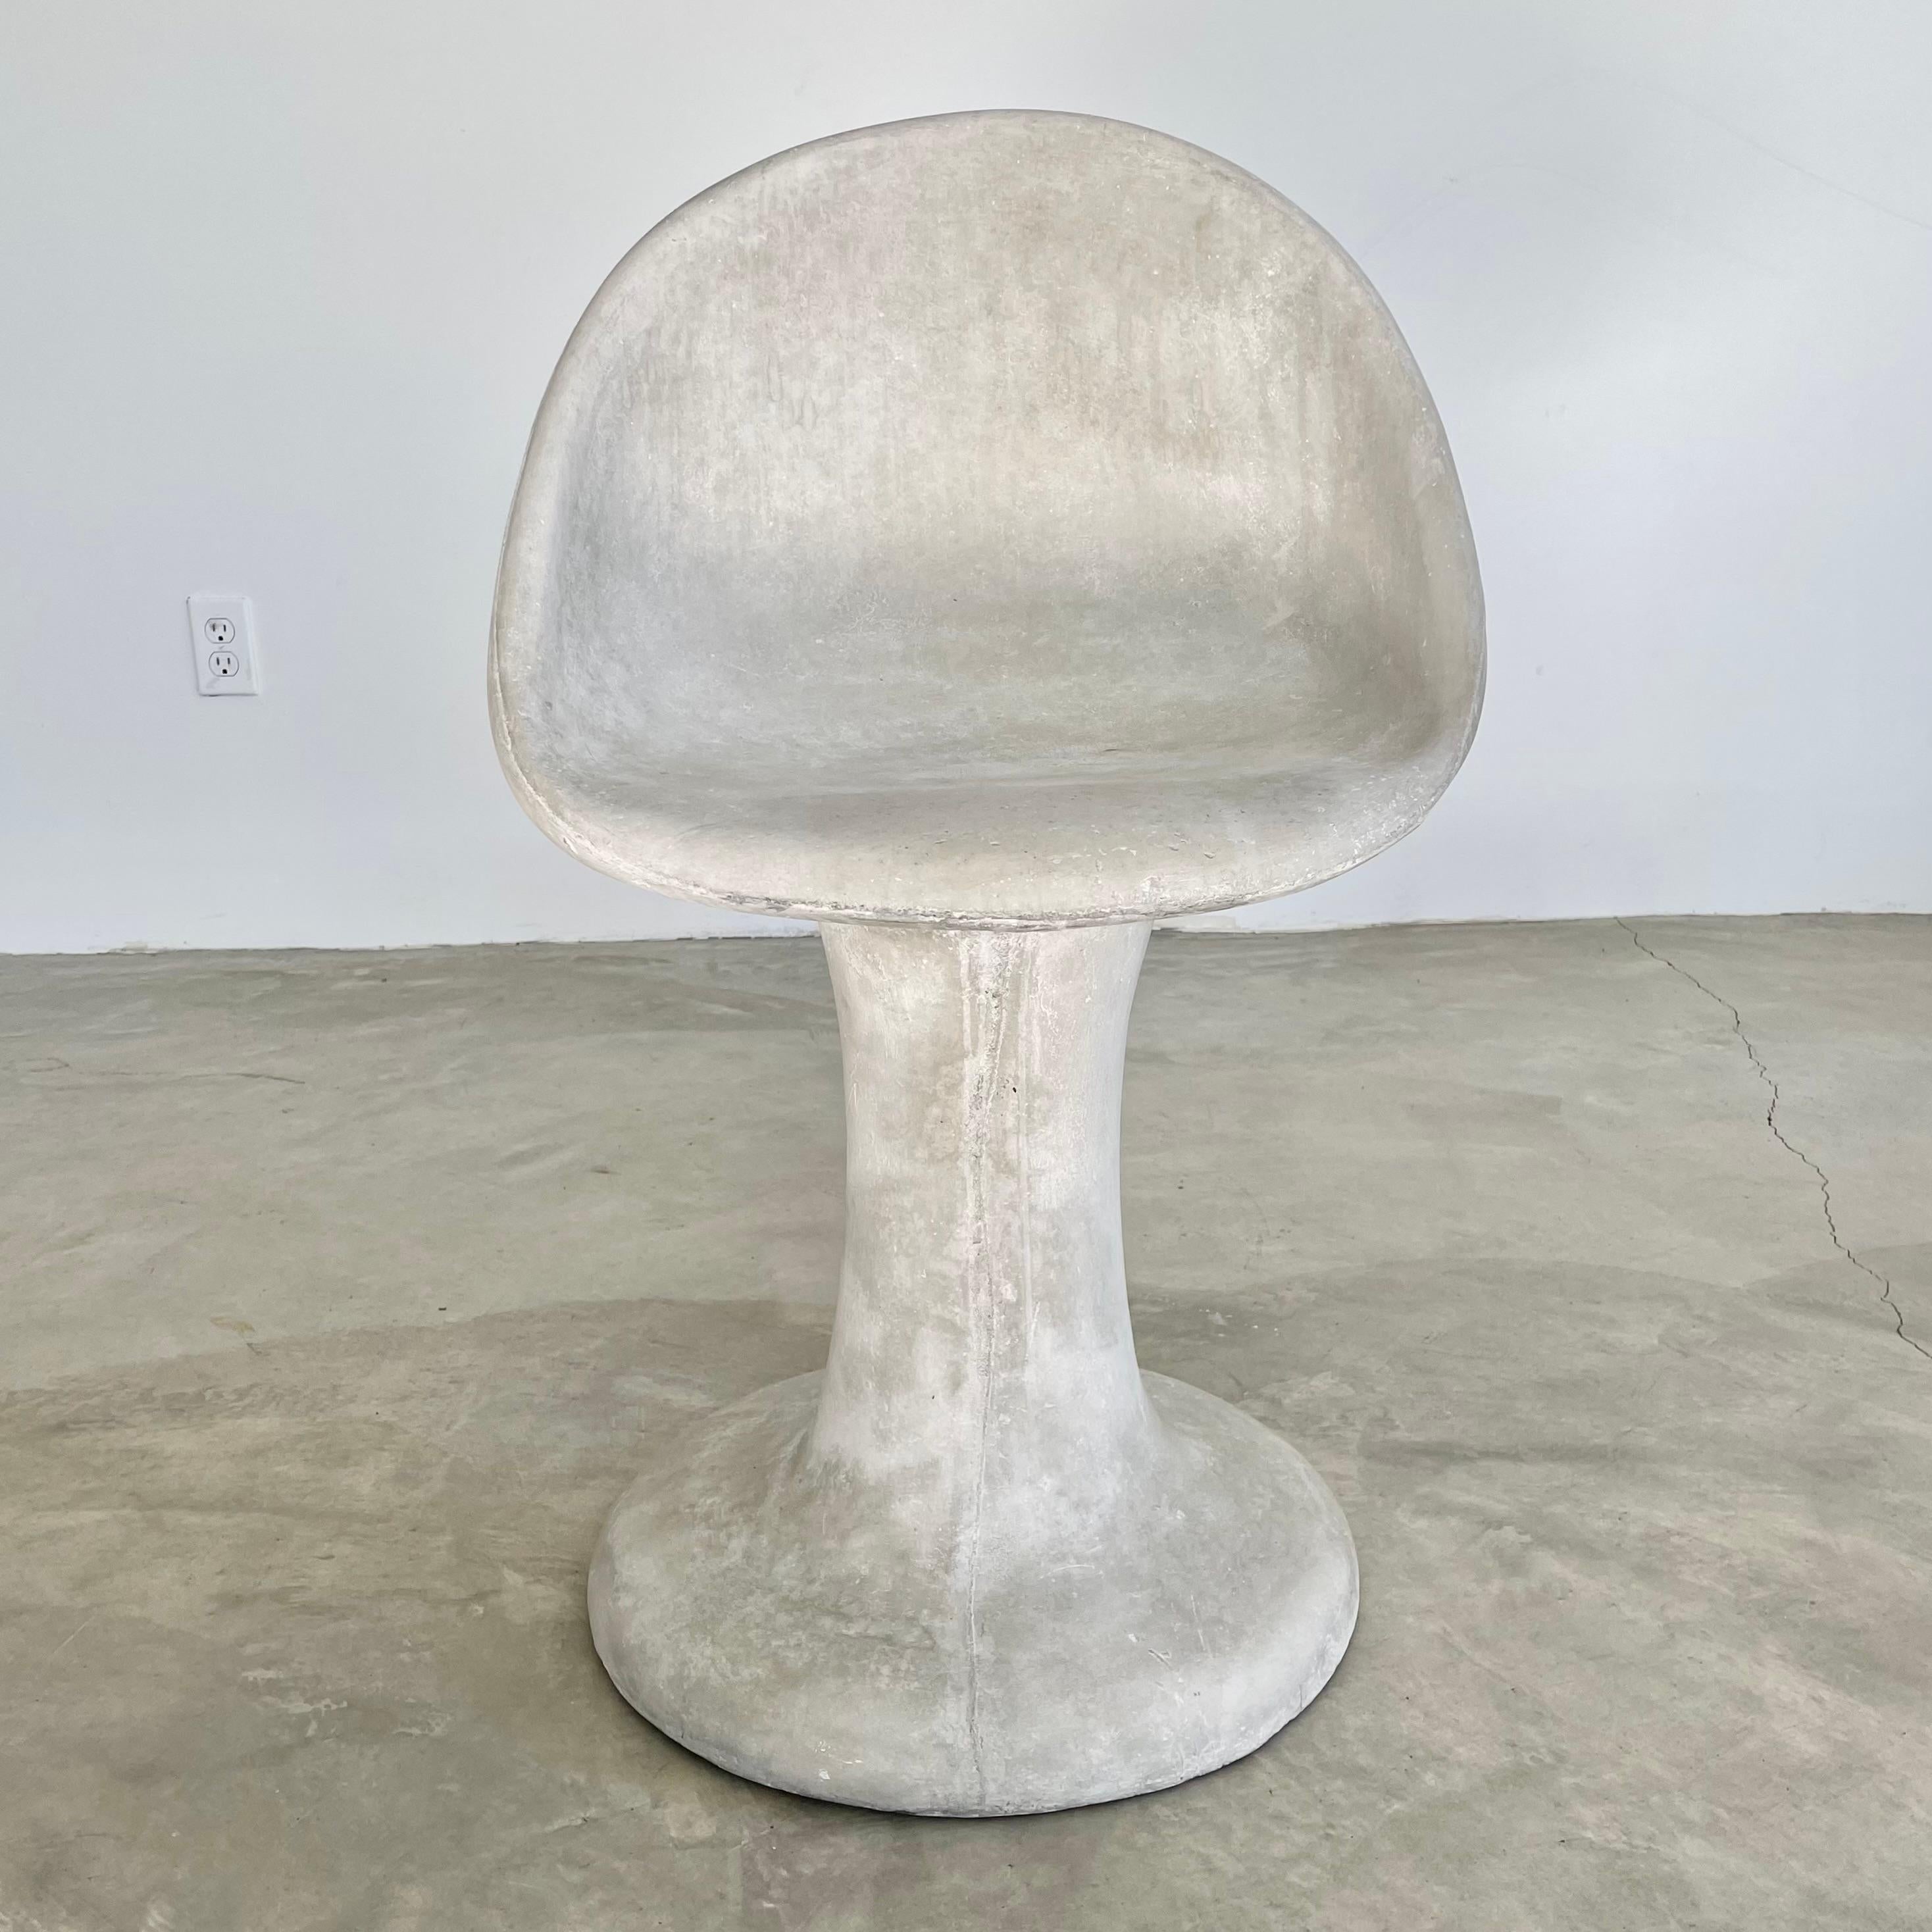 Minimalistische Betonstühle mit tulpenförmigem Fuß und schalenförmigem Sitz. Handgefertigt von Merit in Los Angeles. Diese Stühle haben eine niedrigere Rückenlehne und ein schweres Untergestell, was ihnen ein gutes Gleichgewicht und mehr Stabilität